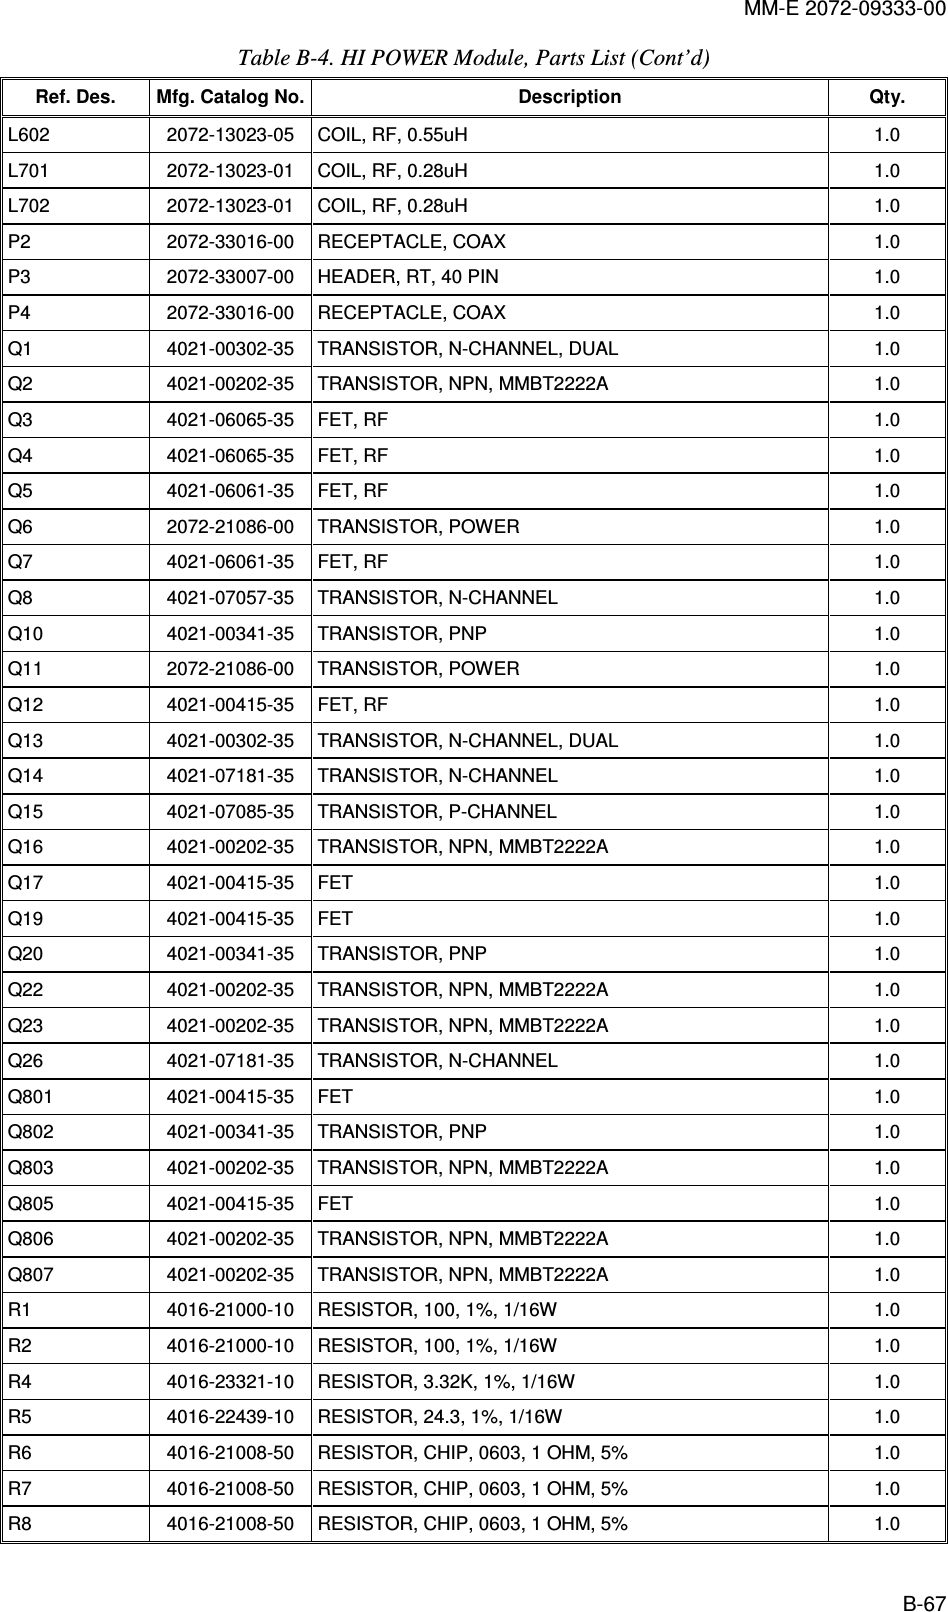 MM-E 2072-09333-00 B-67 Table  B-4. HI POWER Module, Parts List (Cont’d)  Ref. Des.  Mfg. Catalog No. Description  Qty. L602   2072-13023-05   COIL, RF, 0.55uH  1.0  L701   2072-13023-01   COIL, RF, 0.28uH  1.0  L702   2072-13023-01   COIL, RF, 0.28uH  1.0  P2   2072-33016-00   RECEPTACLE, COAX   1.0  P3   2072-33007-00   HEADER, RT, 40 PIN  1.0  P4   2072-33016-00   RECEPTACLE, COAX   1.0  Q1   4021-00302-35   TRANSISTOR, N-CHANNEL, DUAL  1.0  Q2   4021-00202-35   TRANSISTOR, NPN, MMBT2222A  1.0  Q3   4021-06065-35   FET, RF  1.0  Q4   4021-06065-35   FET, RF  1.0  Q5   4021-06061-35   FET, RF  1.0  Q6   2072-21086-00   TRANSISTOR, POWER   1.0  Q7   4021-06061-35   FET, RF  1.0  Q8   4021-07057-35   TRANSISTOR, N-CHANNEL   1.0  Q10   4021-00341-35   TRANSISTOR, PNP  1.0  Q11   2072-21086-00   TRANSISTOR, POWER   1.0  Q12   4021-00415-35   FET, RF  1.0  Q13   4021-00302-35   TRANSISTOR, N-CHANNEL, DUAL  1.0  Q14   4021-07181-35   TRANSISTOR, N-CHANNEL  1.0  Q15   4021-07085-35   TRANSISTOR, P-CHANNEL   1.0  Q16   4021-00202-35   TRANSISTOR, NPN, MMBT2222A  1.0  Q17   4021-00415-35   FET  1.0  Q19   4021-00415-35   FET  1.0  Q20   4021-00341-35   TRANSISTOR, PNP  1.0  Q22   4021-00202-35   TRANSISTOR, NPN, MMBT2222A  1.0  Q23   4021-00202-35   TRANSISTOR, NPN, MMBT2222A  1.0  Q26   4021-07181-35   TRANSISTOR, N-CHANNEL  1.0  Q801   4021-00415-35   FET  1.0  Q802   4021-00341-35   TRANSISTOR, PNP  1.0  Q803   4021-00202-35   TRANSISTOR, NPN, MMBT2222A  1.0  Q805   4021-00415-35   FET  1.0  Q806   4021-00202-35   TRANSISTOR, NPN, MMBT2222A  1.0  Q807   4021-00202-35   TRANSISTOR, NPN, MMBT2222A  1.0  R1   4016-21000-10   RESISTOR, 100, 1%, 1/16W  1.0  R2   4016-21000-10   RESISTOR, 100, 1%, 1/16W  1.0  R4   4016-23321-10   RESISTOR, 3.32K, 1%, 1/16W  1.0  R5   4016-22439-10   RESISTOR, 24.3, 1%, 1/16W  1.0  R6   4016-21008-50   RESISTOR, CHIP, 0603, 1 OHM, 5%  1.0  R7   4016-21008-50   RESISTOR, CHIP, 0603, 1 OHM, 5%  1.0  R8   4016-21008-50   RESISTOR, CHIP, 0603, 1 OHM, 5%  1.0  